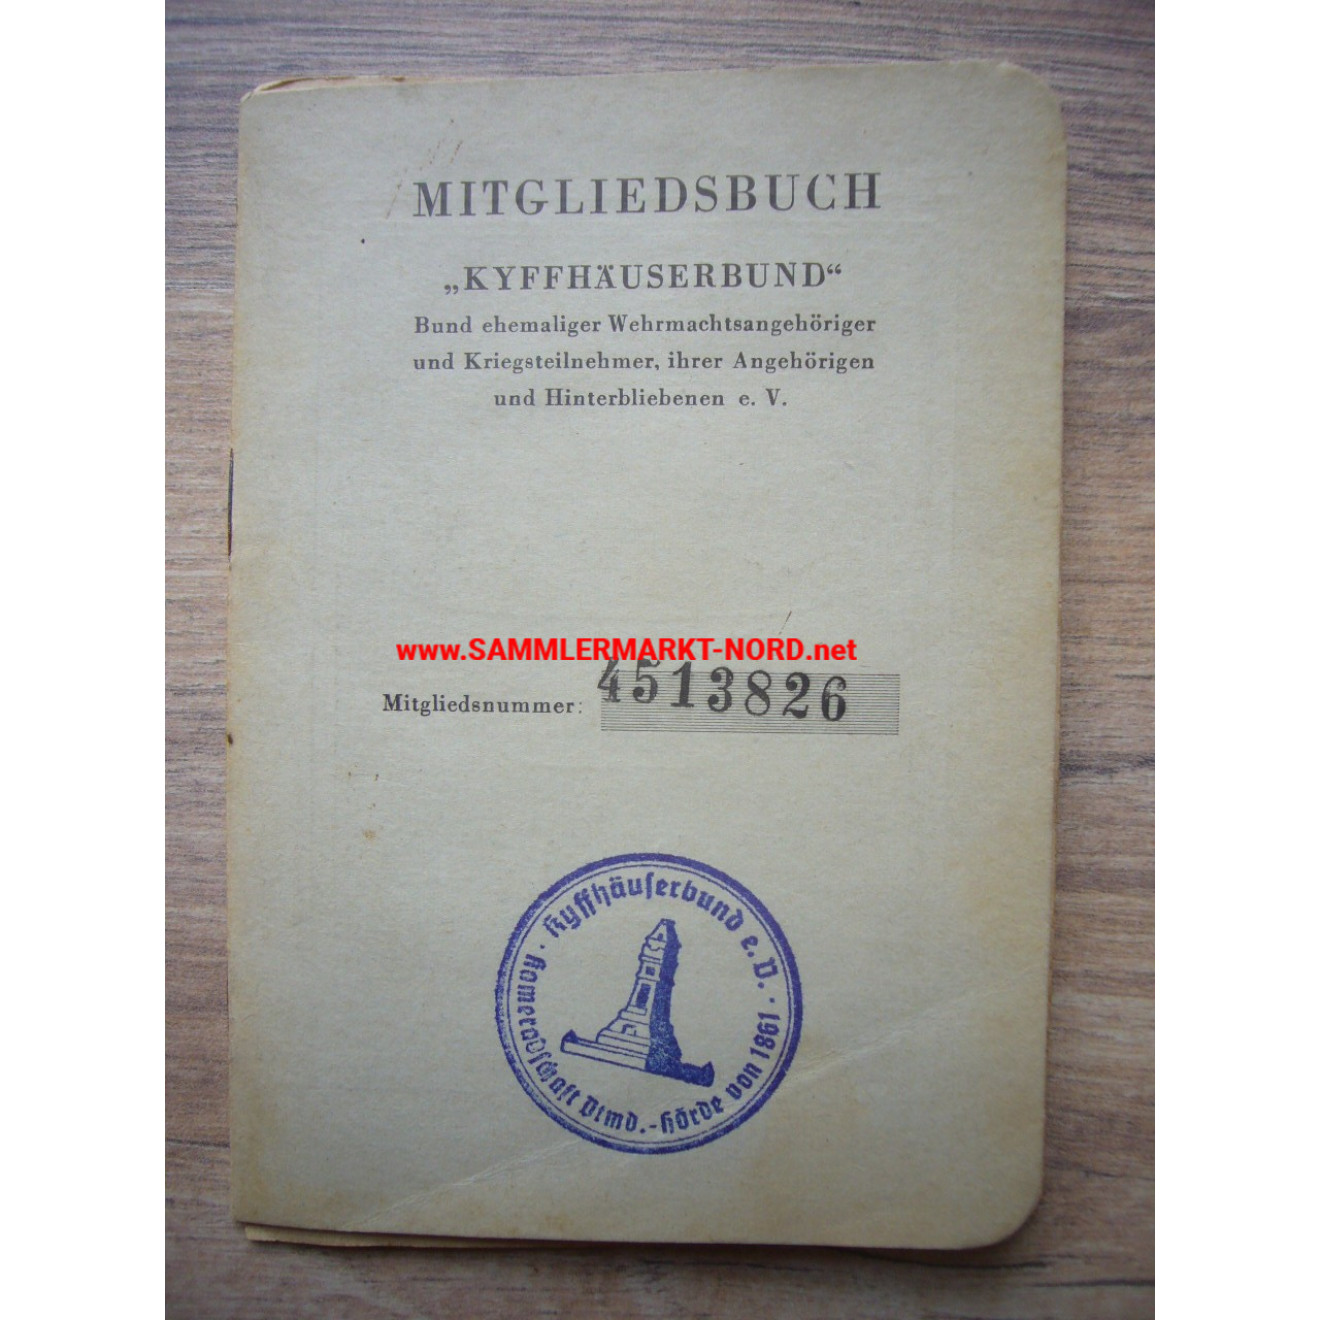 Kyffhäuserbund - Bund ehemaliger Wehrmachtsangehöriger und Kriegsteilnehmer - Mitgliedsbuch